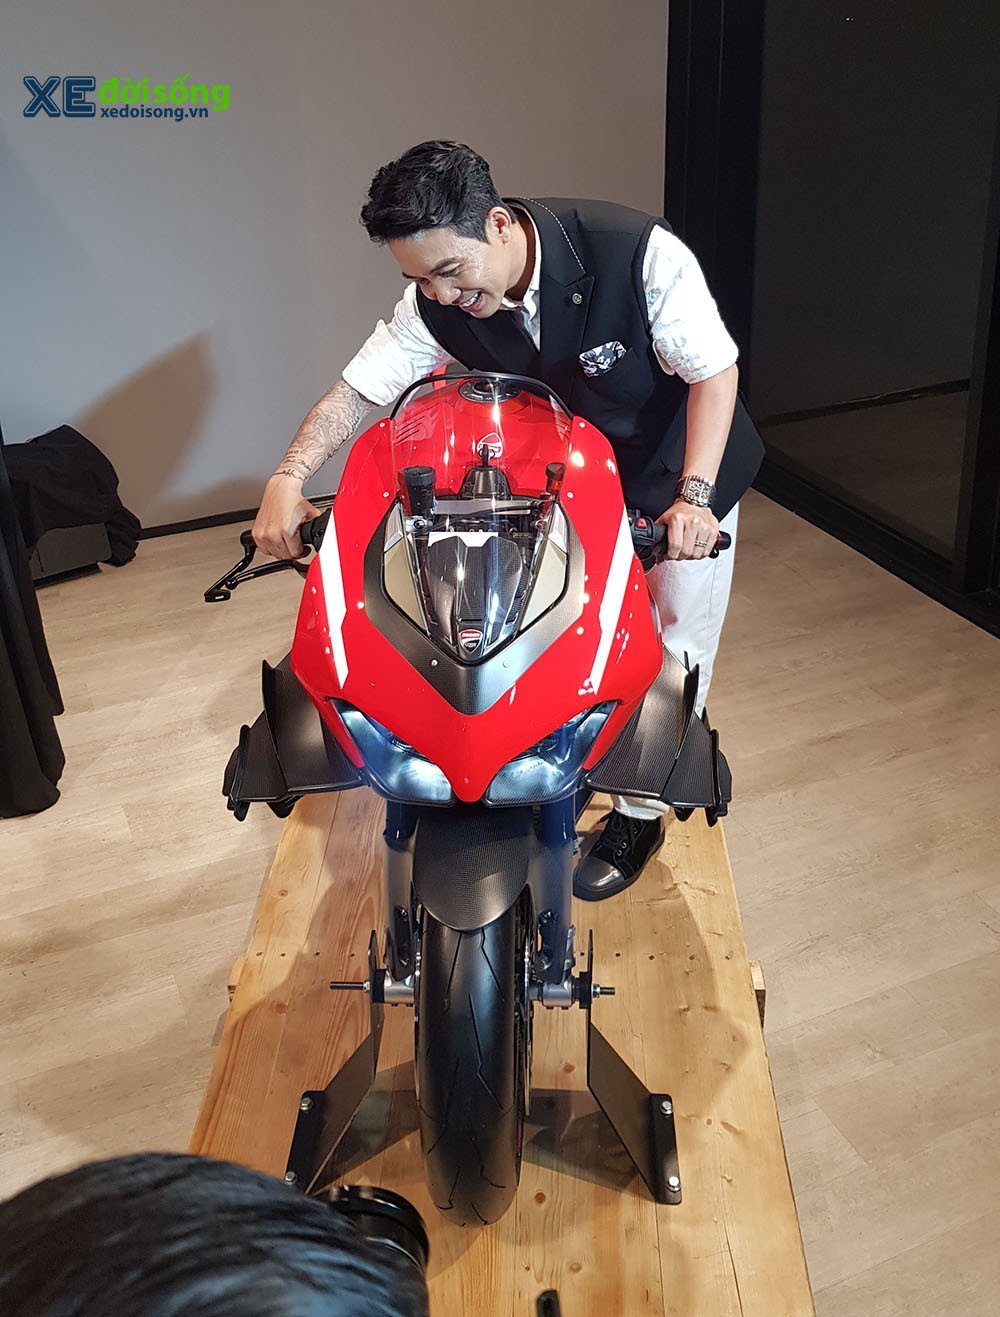 Đại gia Minh Nhựa chi 6 tỷ sở hữu siêu mô tô Ducati Superleggera V4 đầu tiên Việt Nam ảnh 6